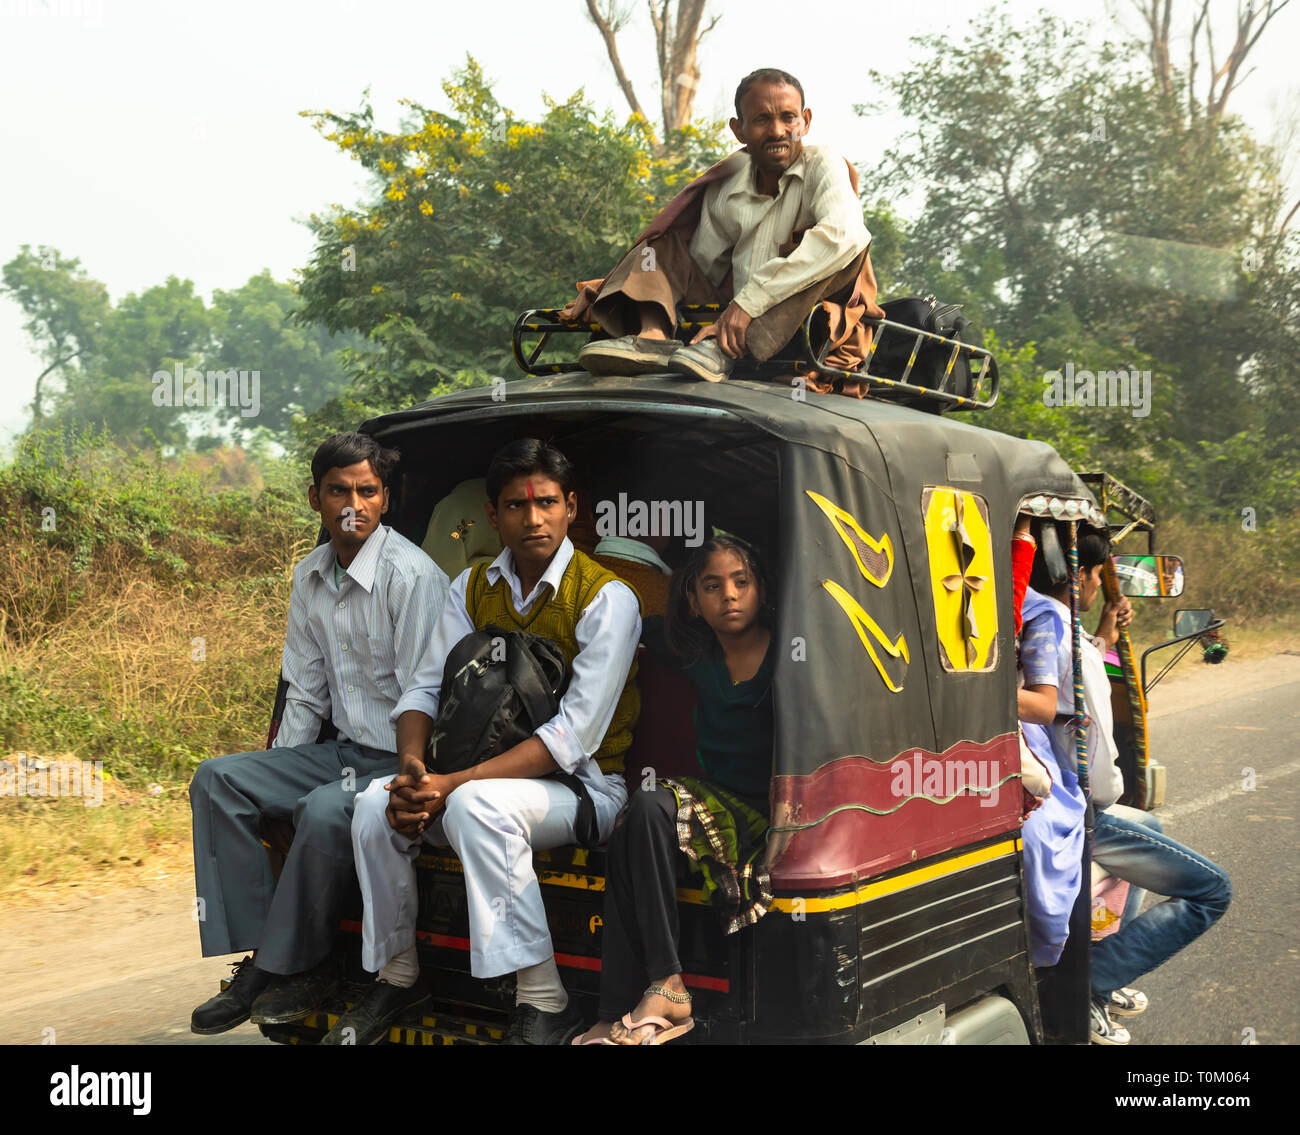 AGRA, INDIEN - November 16, 2012: Traditionelle indische Familie fährt mit dem Auto. Indische Menschen und ihre bunte Kultur Stockfoto